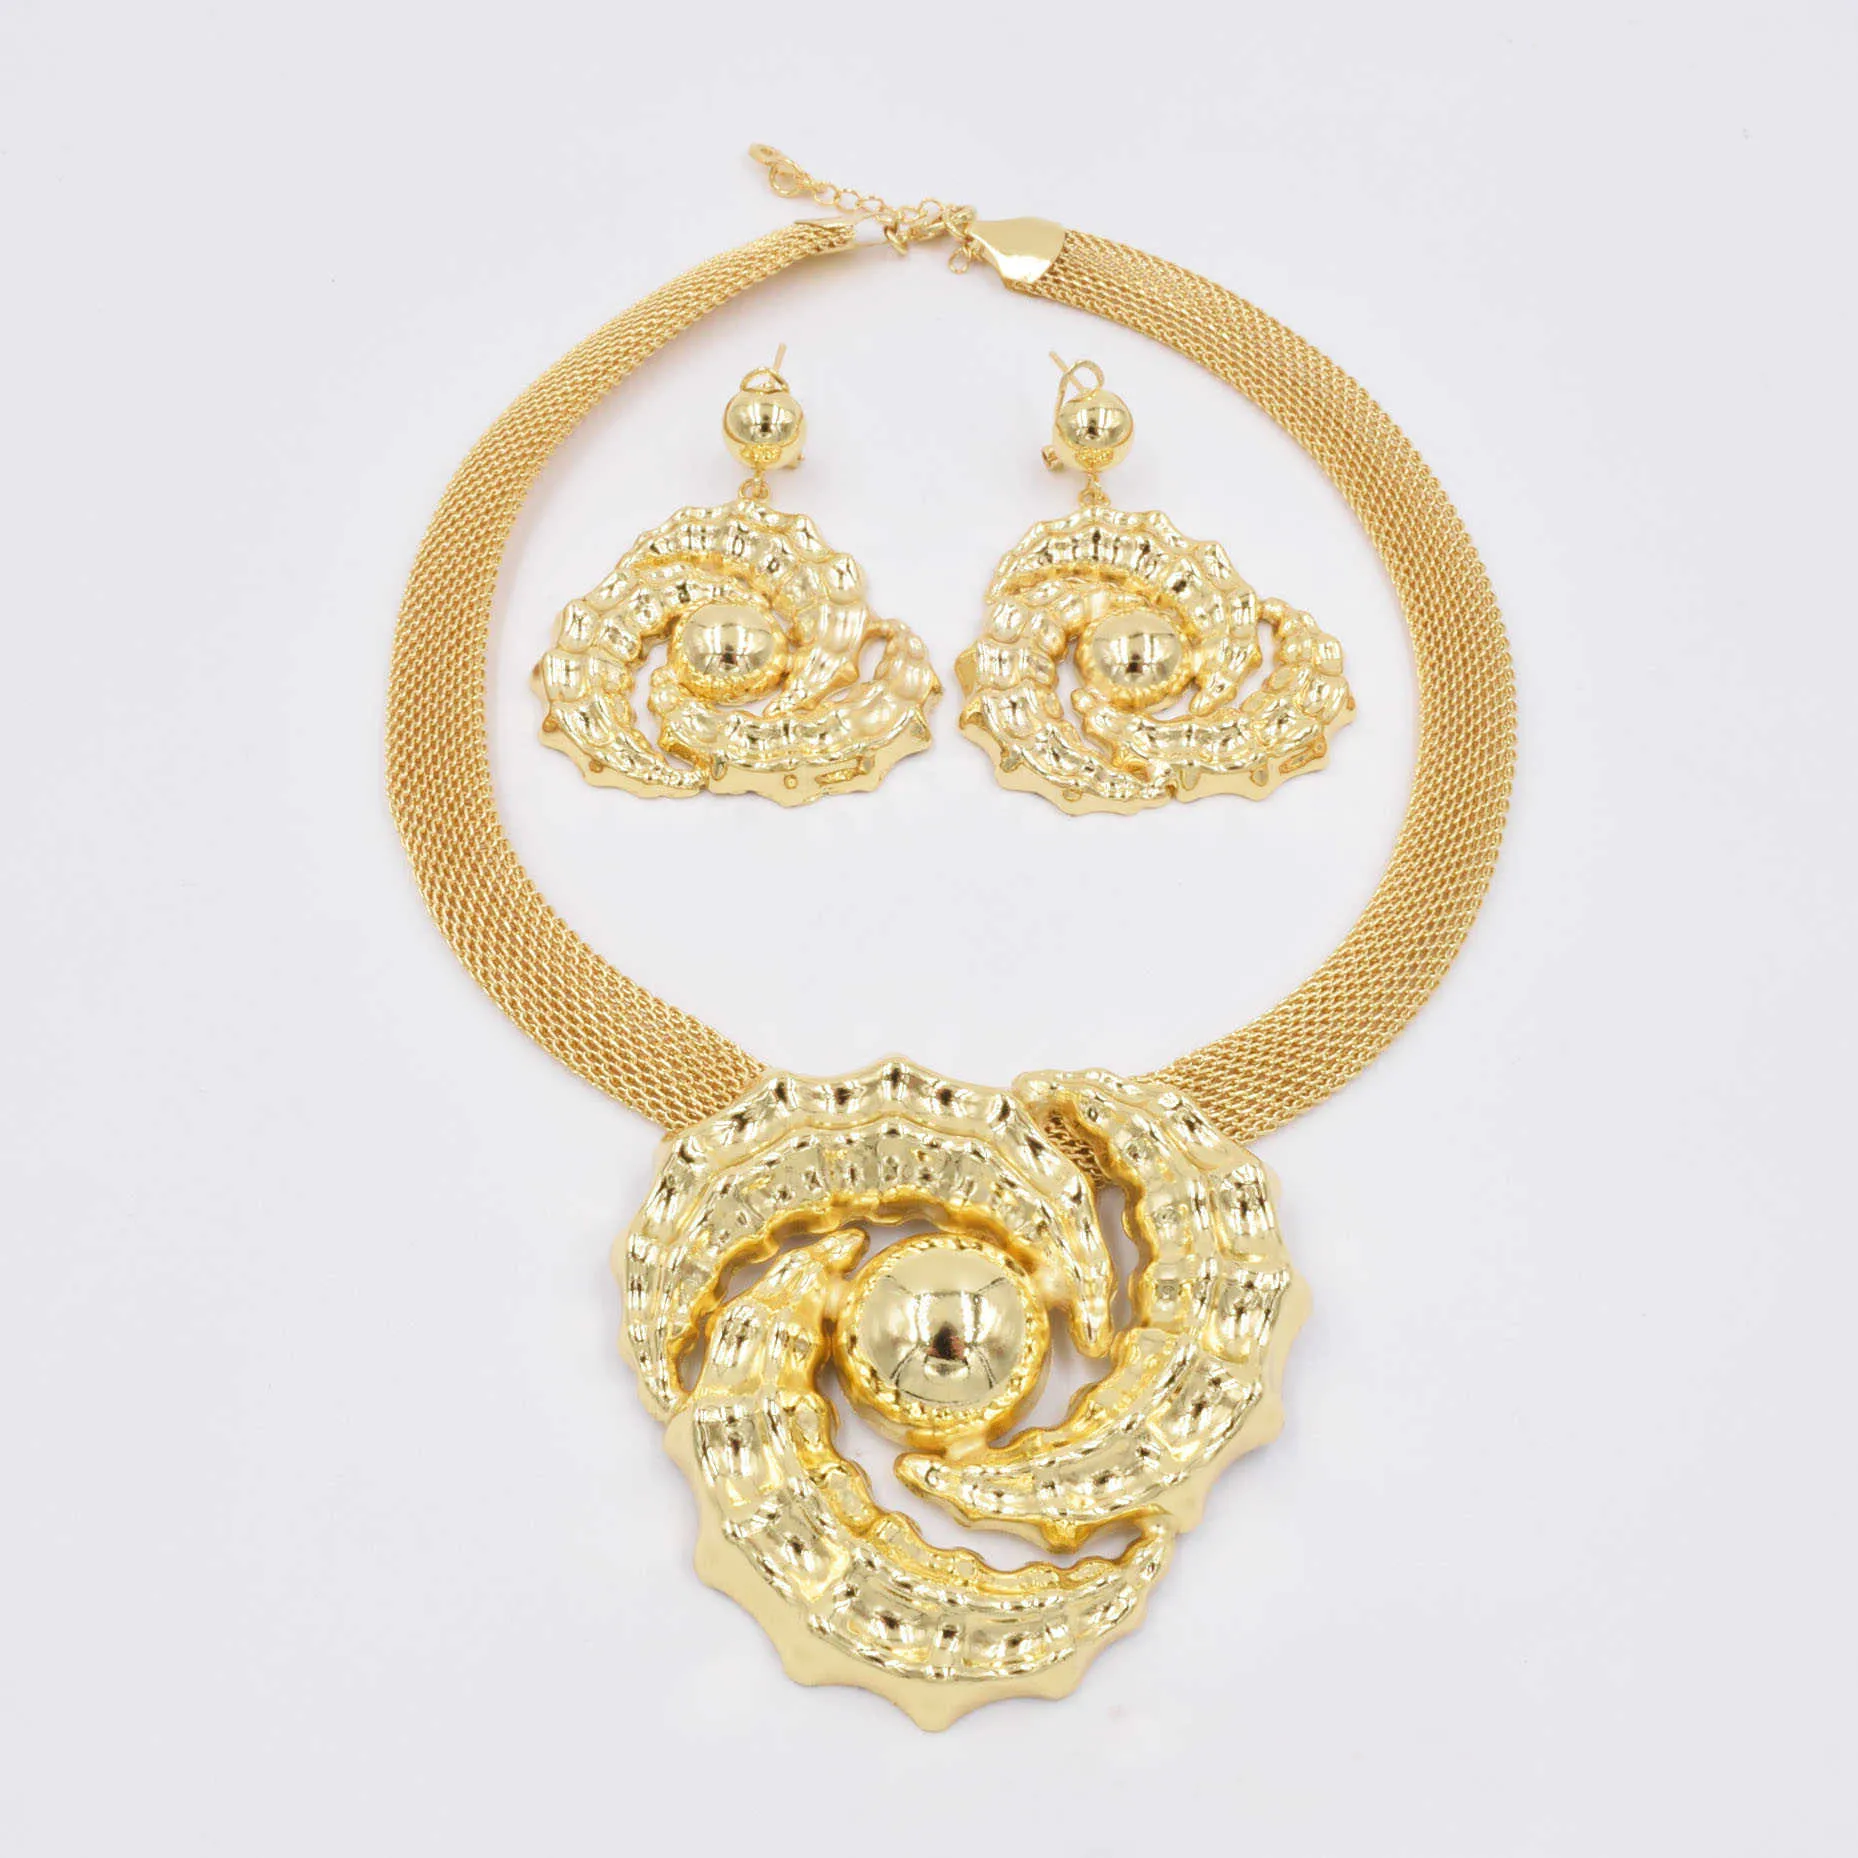 Haute qualité Ltaly 750 couleur or ensemble de bijoux pour femmes perles africaines bijoux mode collier ensemble boucle d'oreille bijoux 2106197885491